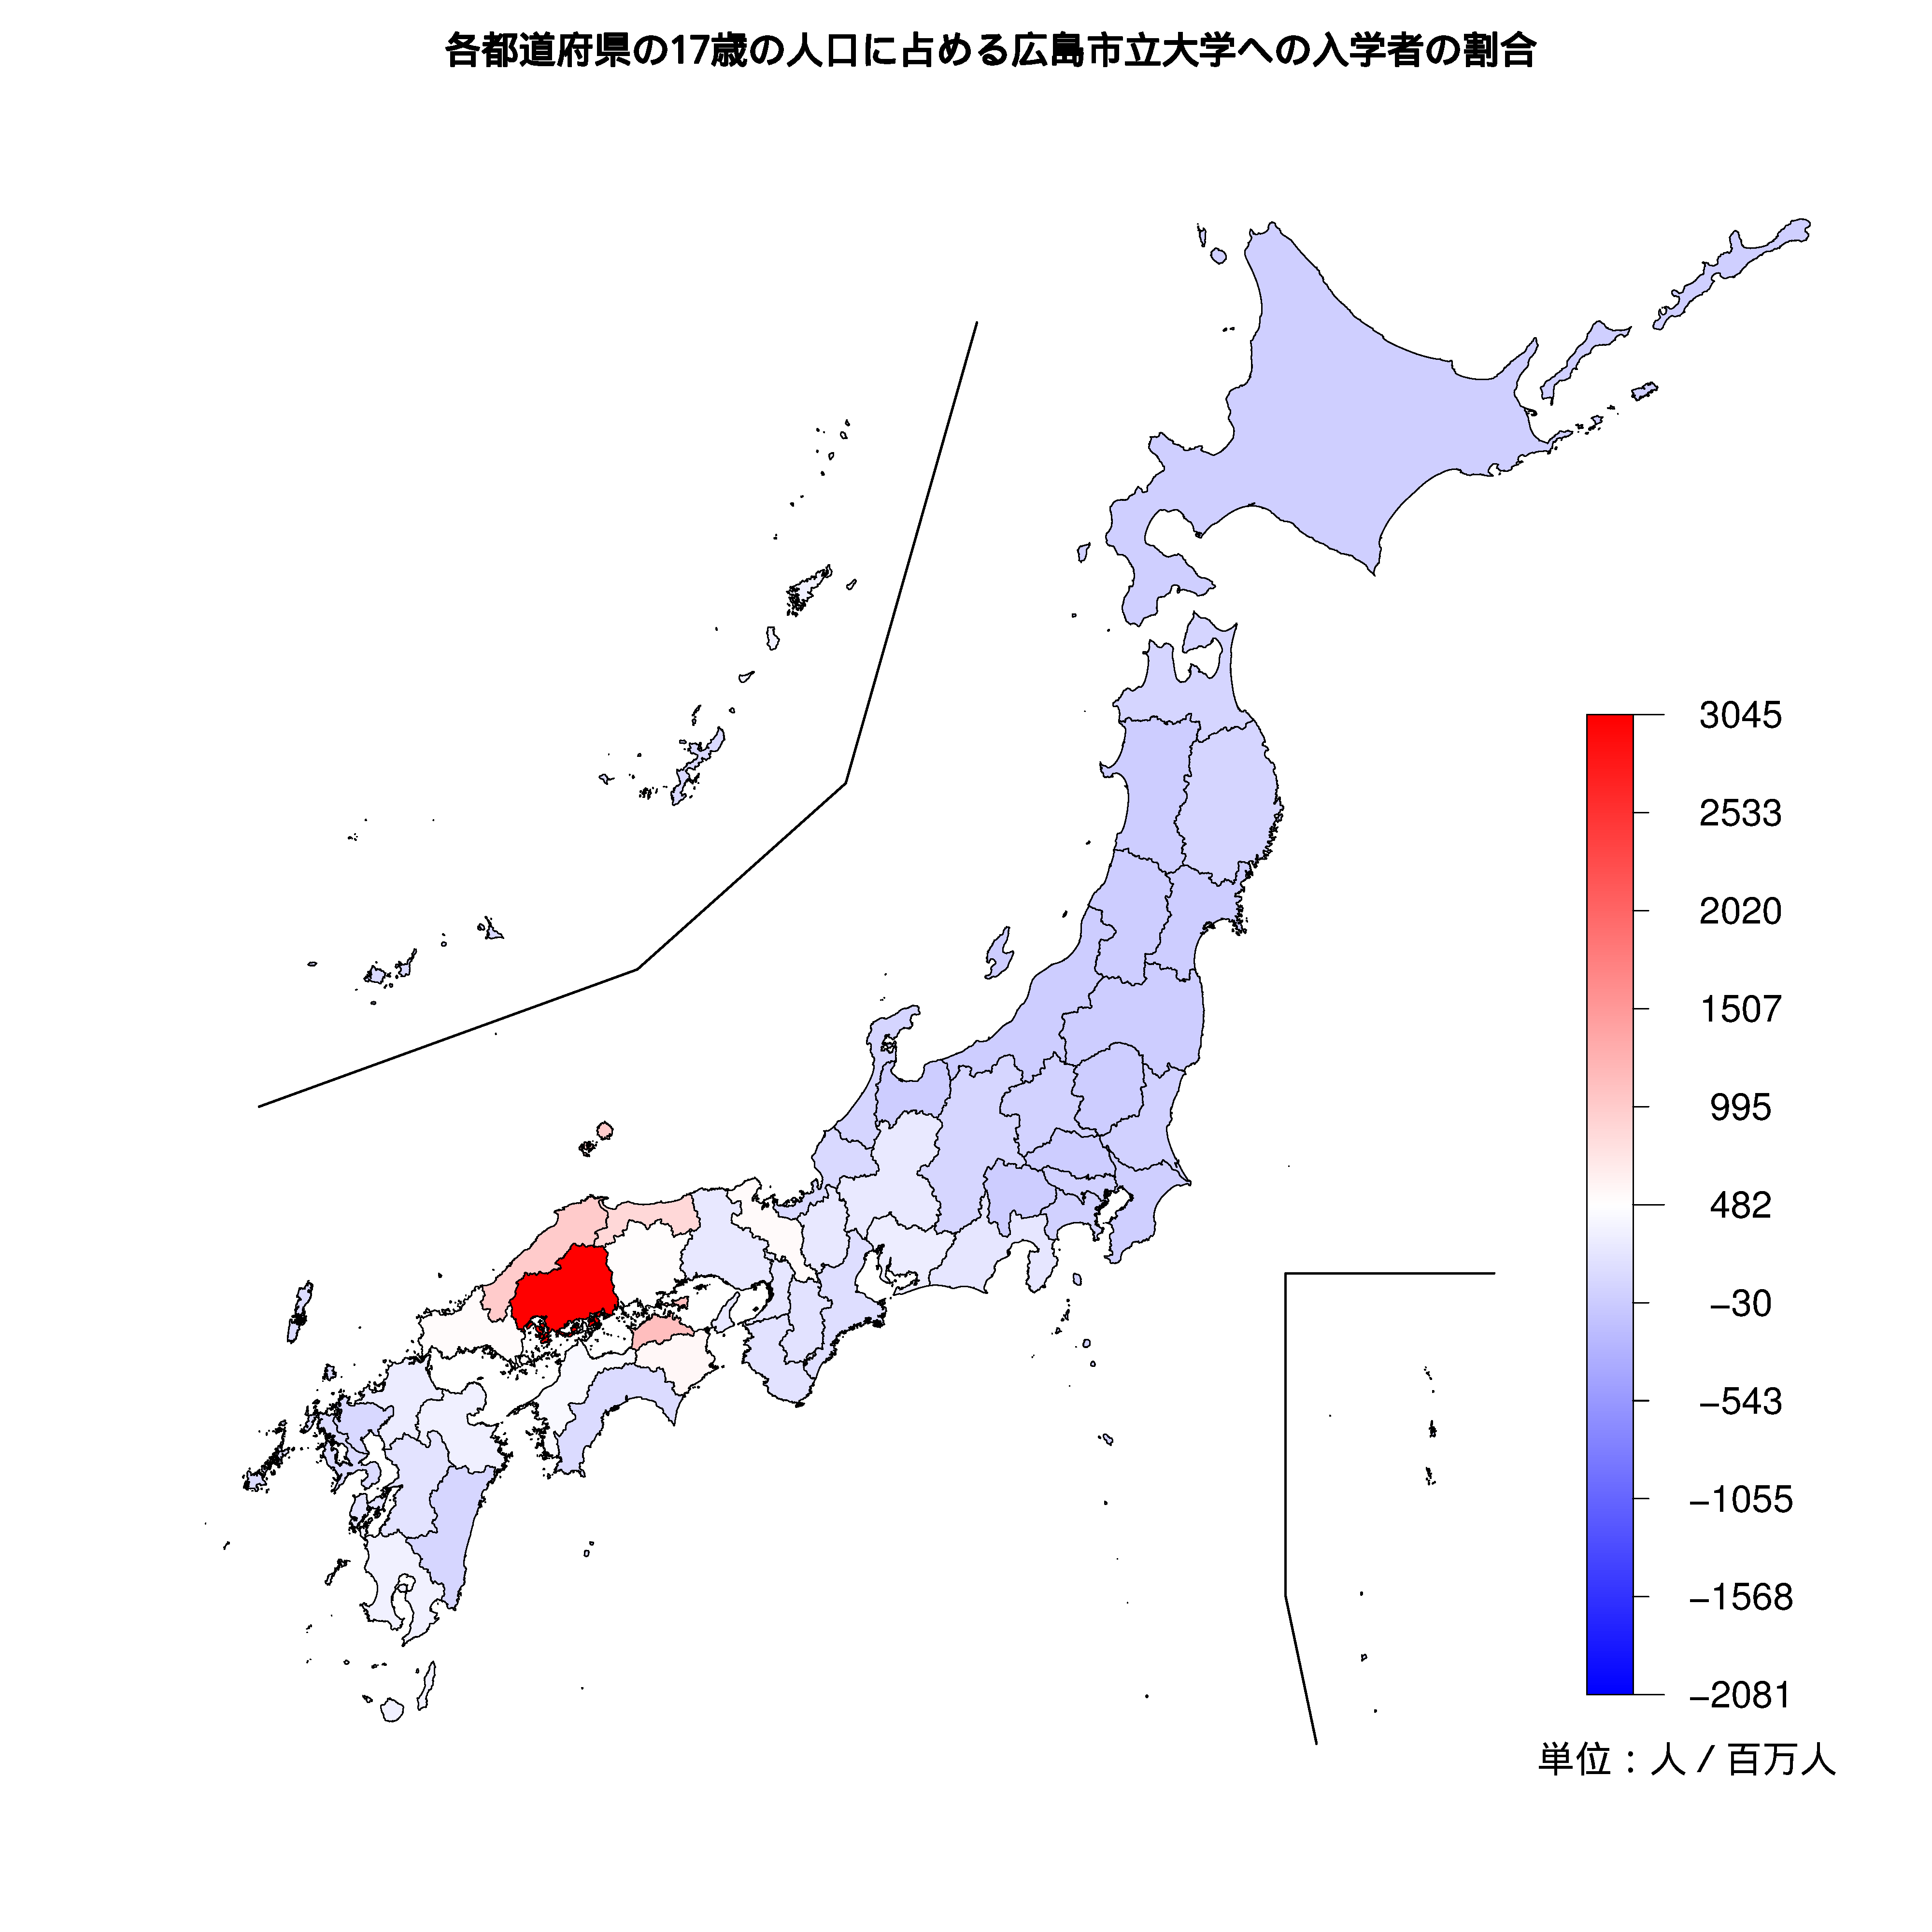 広島市立大学への入学者が多い都道府県の色分け地図